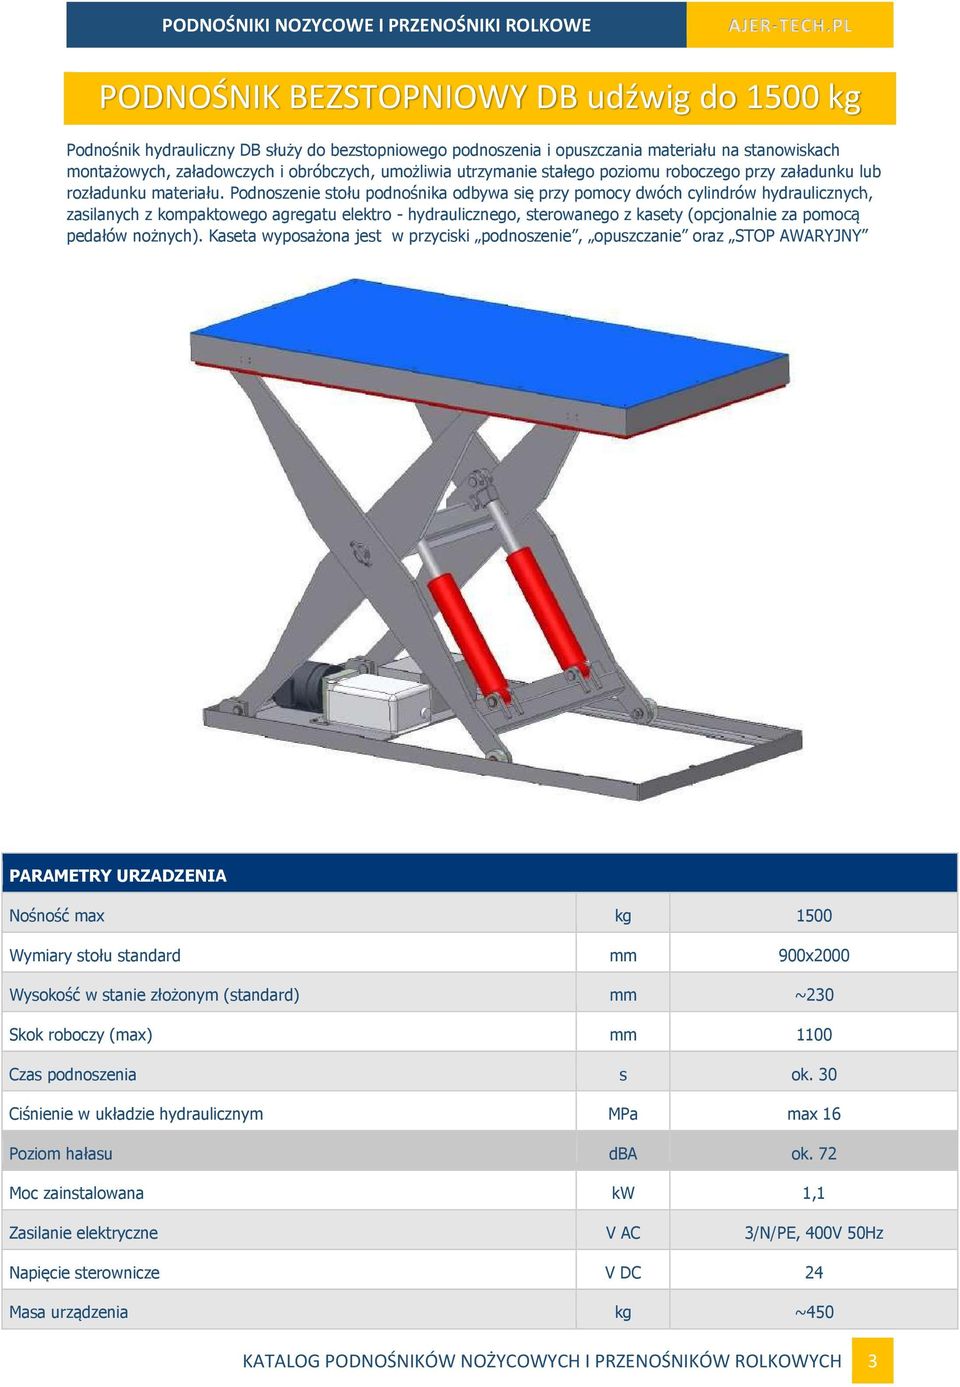 Podnoszenie stołu podnośnika odbywa się przy pomocy dwóch cylindrów hydraulicznych, zasilanych z kompaktowego agregatu elektro - hydraulicznego, sterowanego z kasety (opcjonalnie za pomocą pedałów